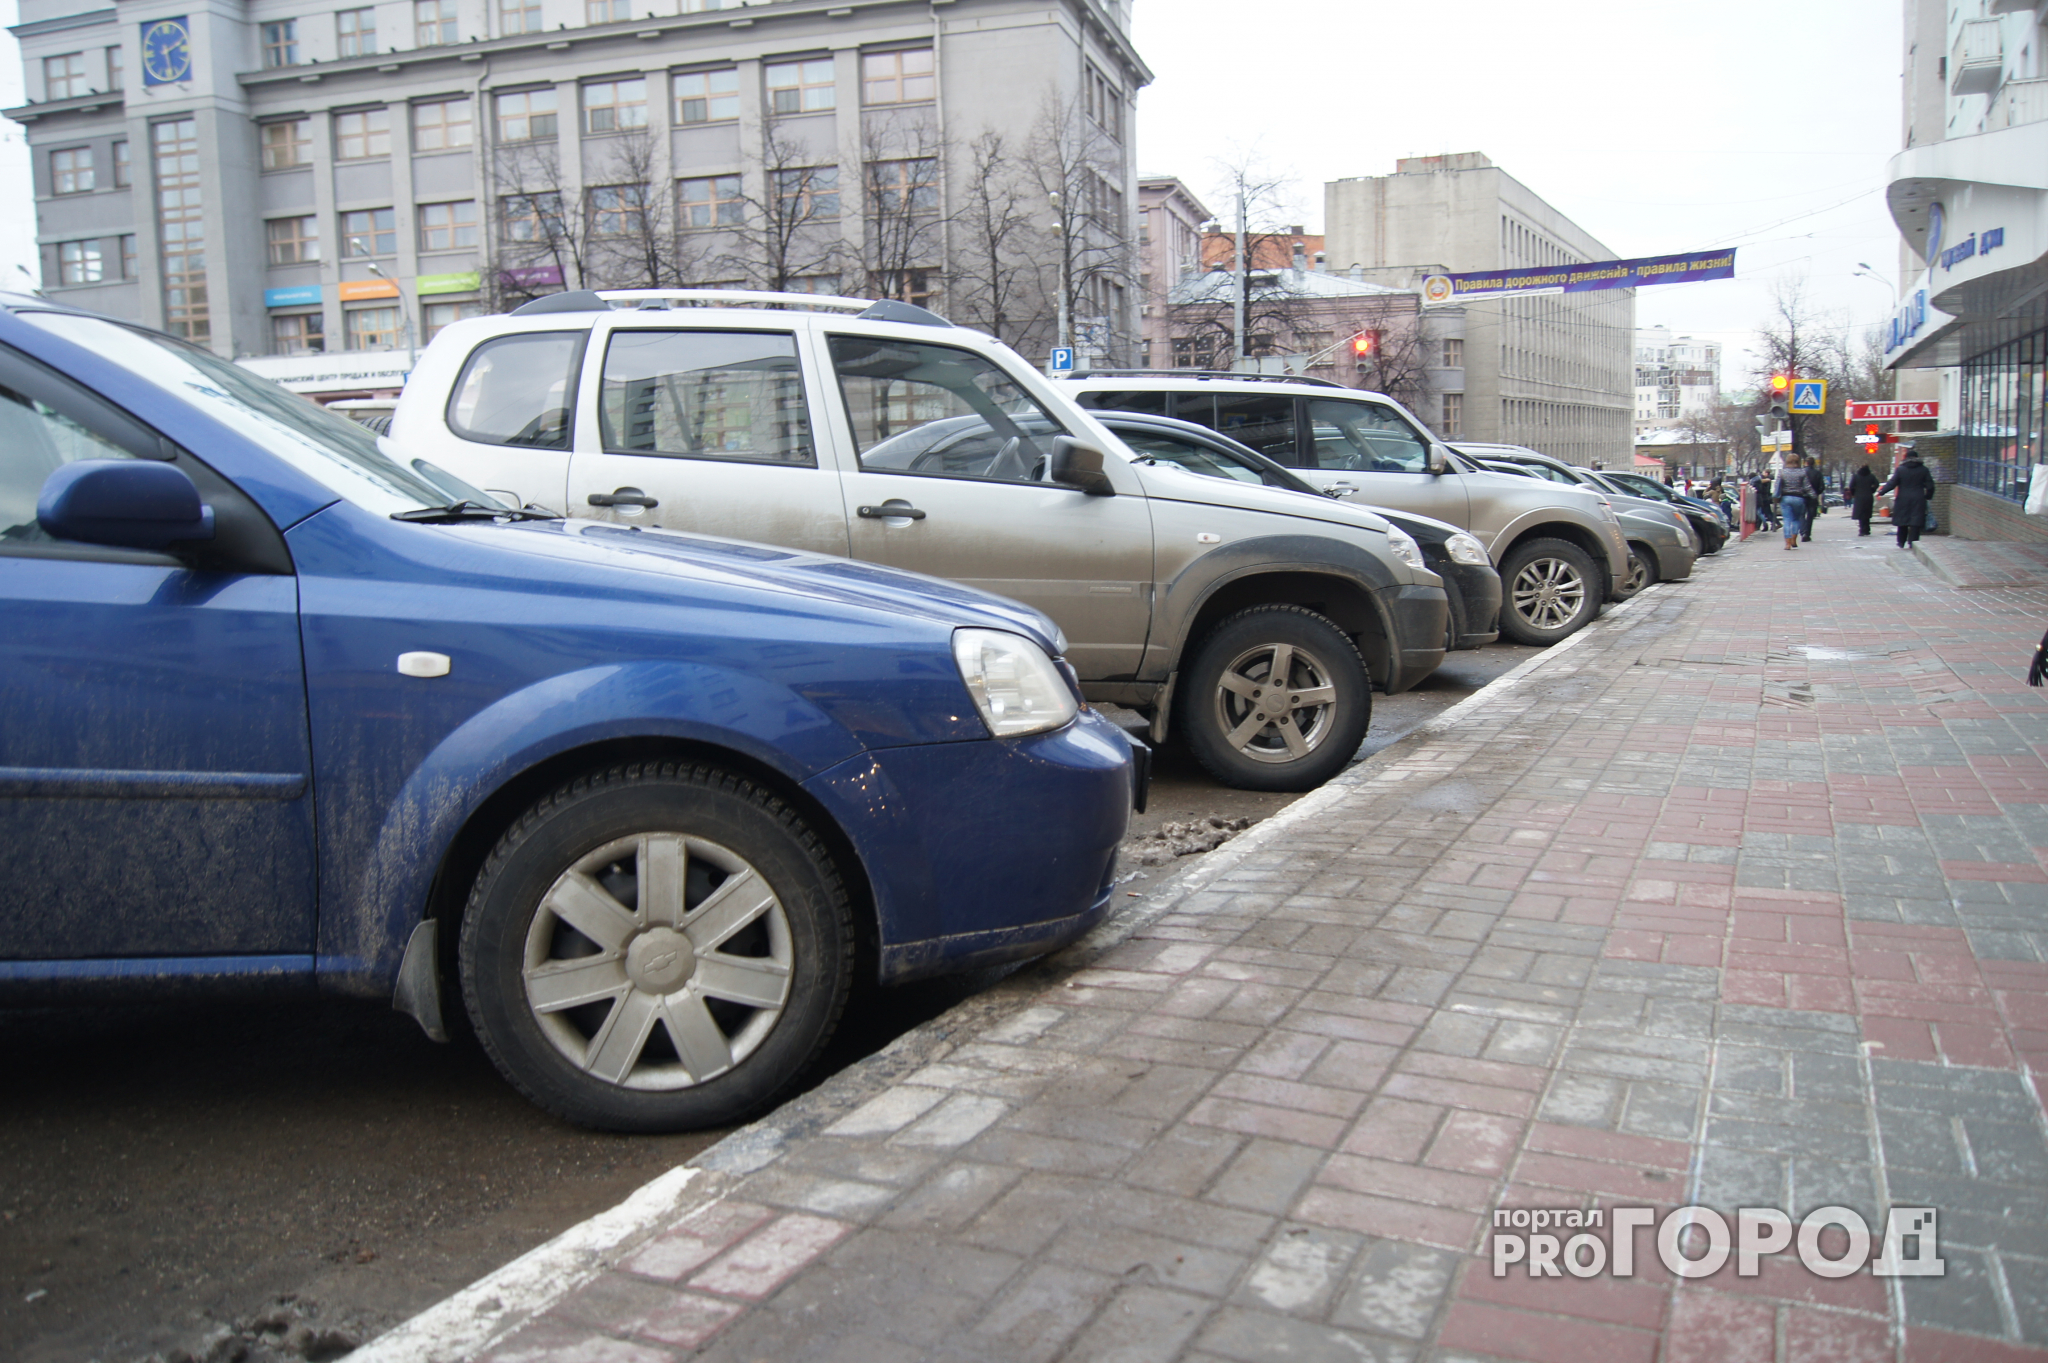 Еще одна платная парковка появится в Нижнем Новгороде